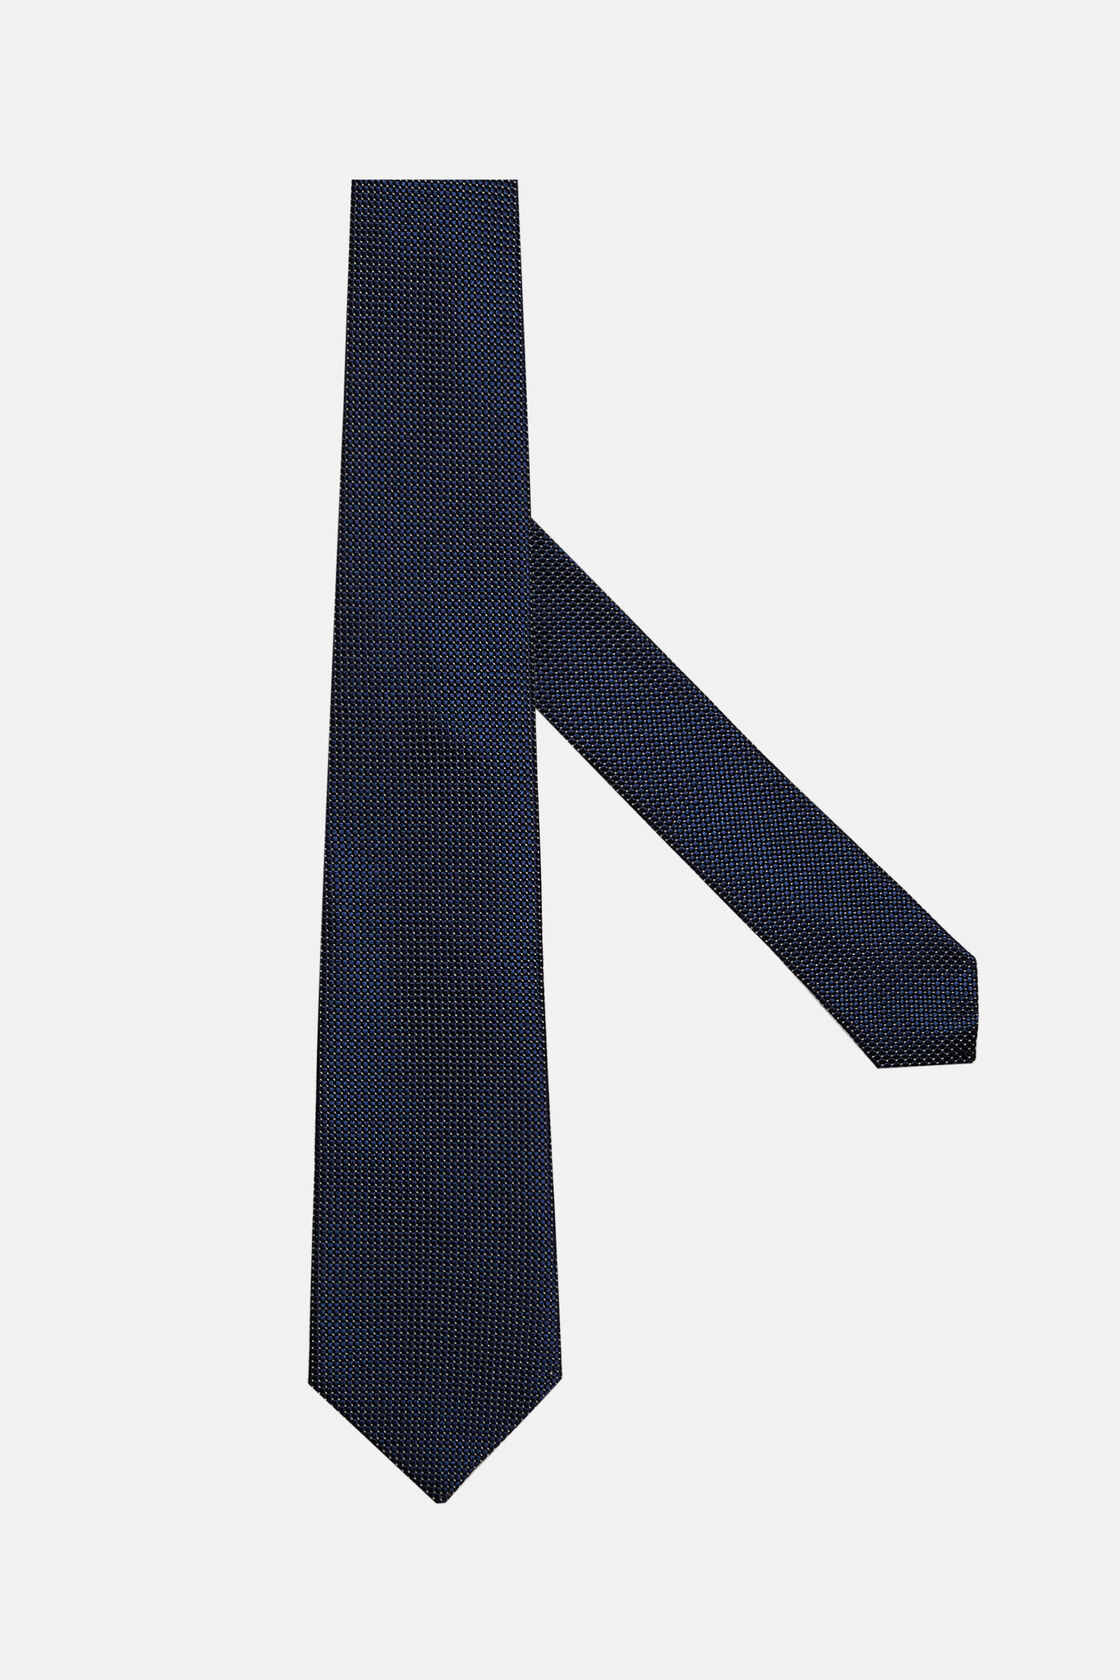 Krawatte aus Seidengemisch mit Mikromuster, Navy blau, hi-res